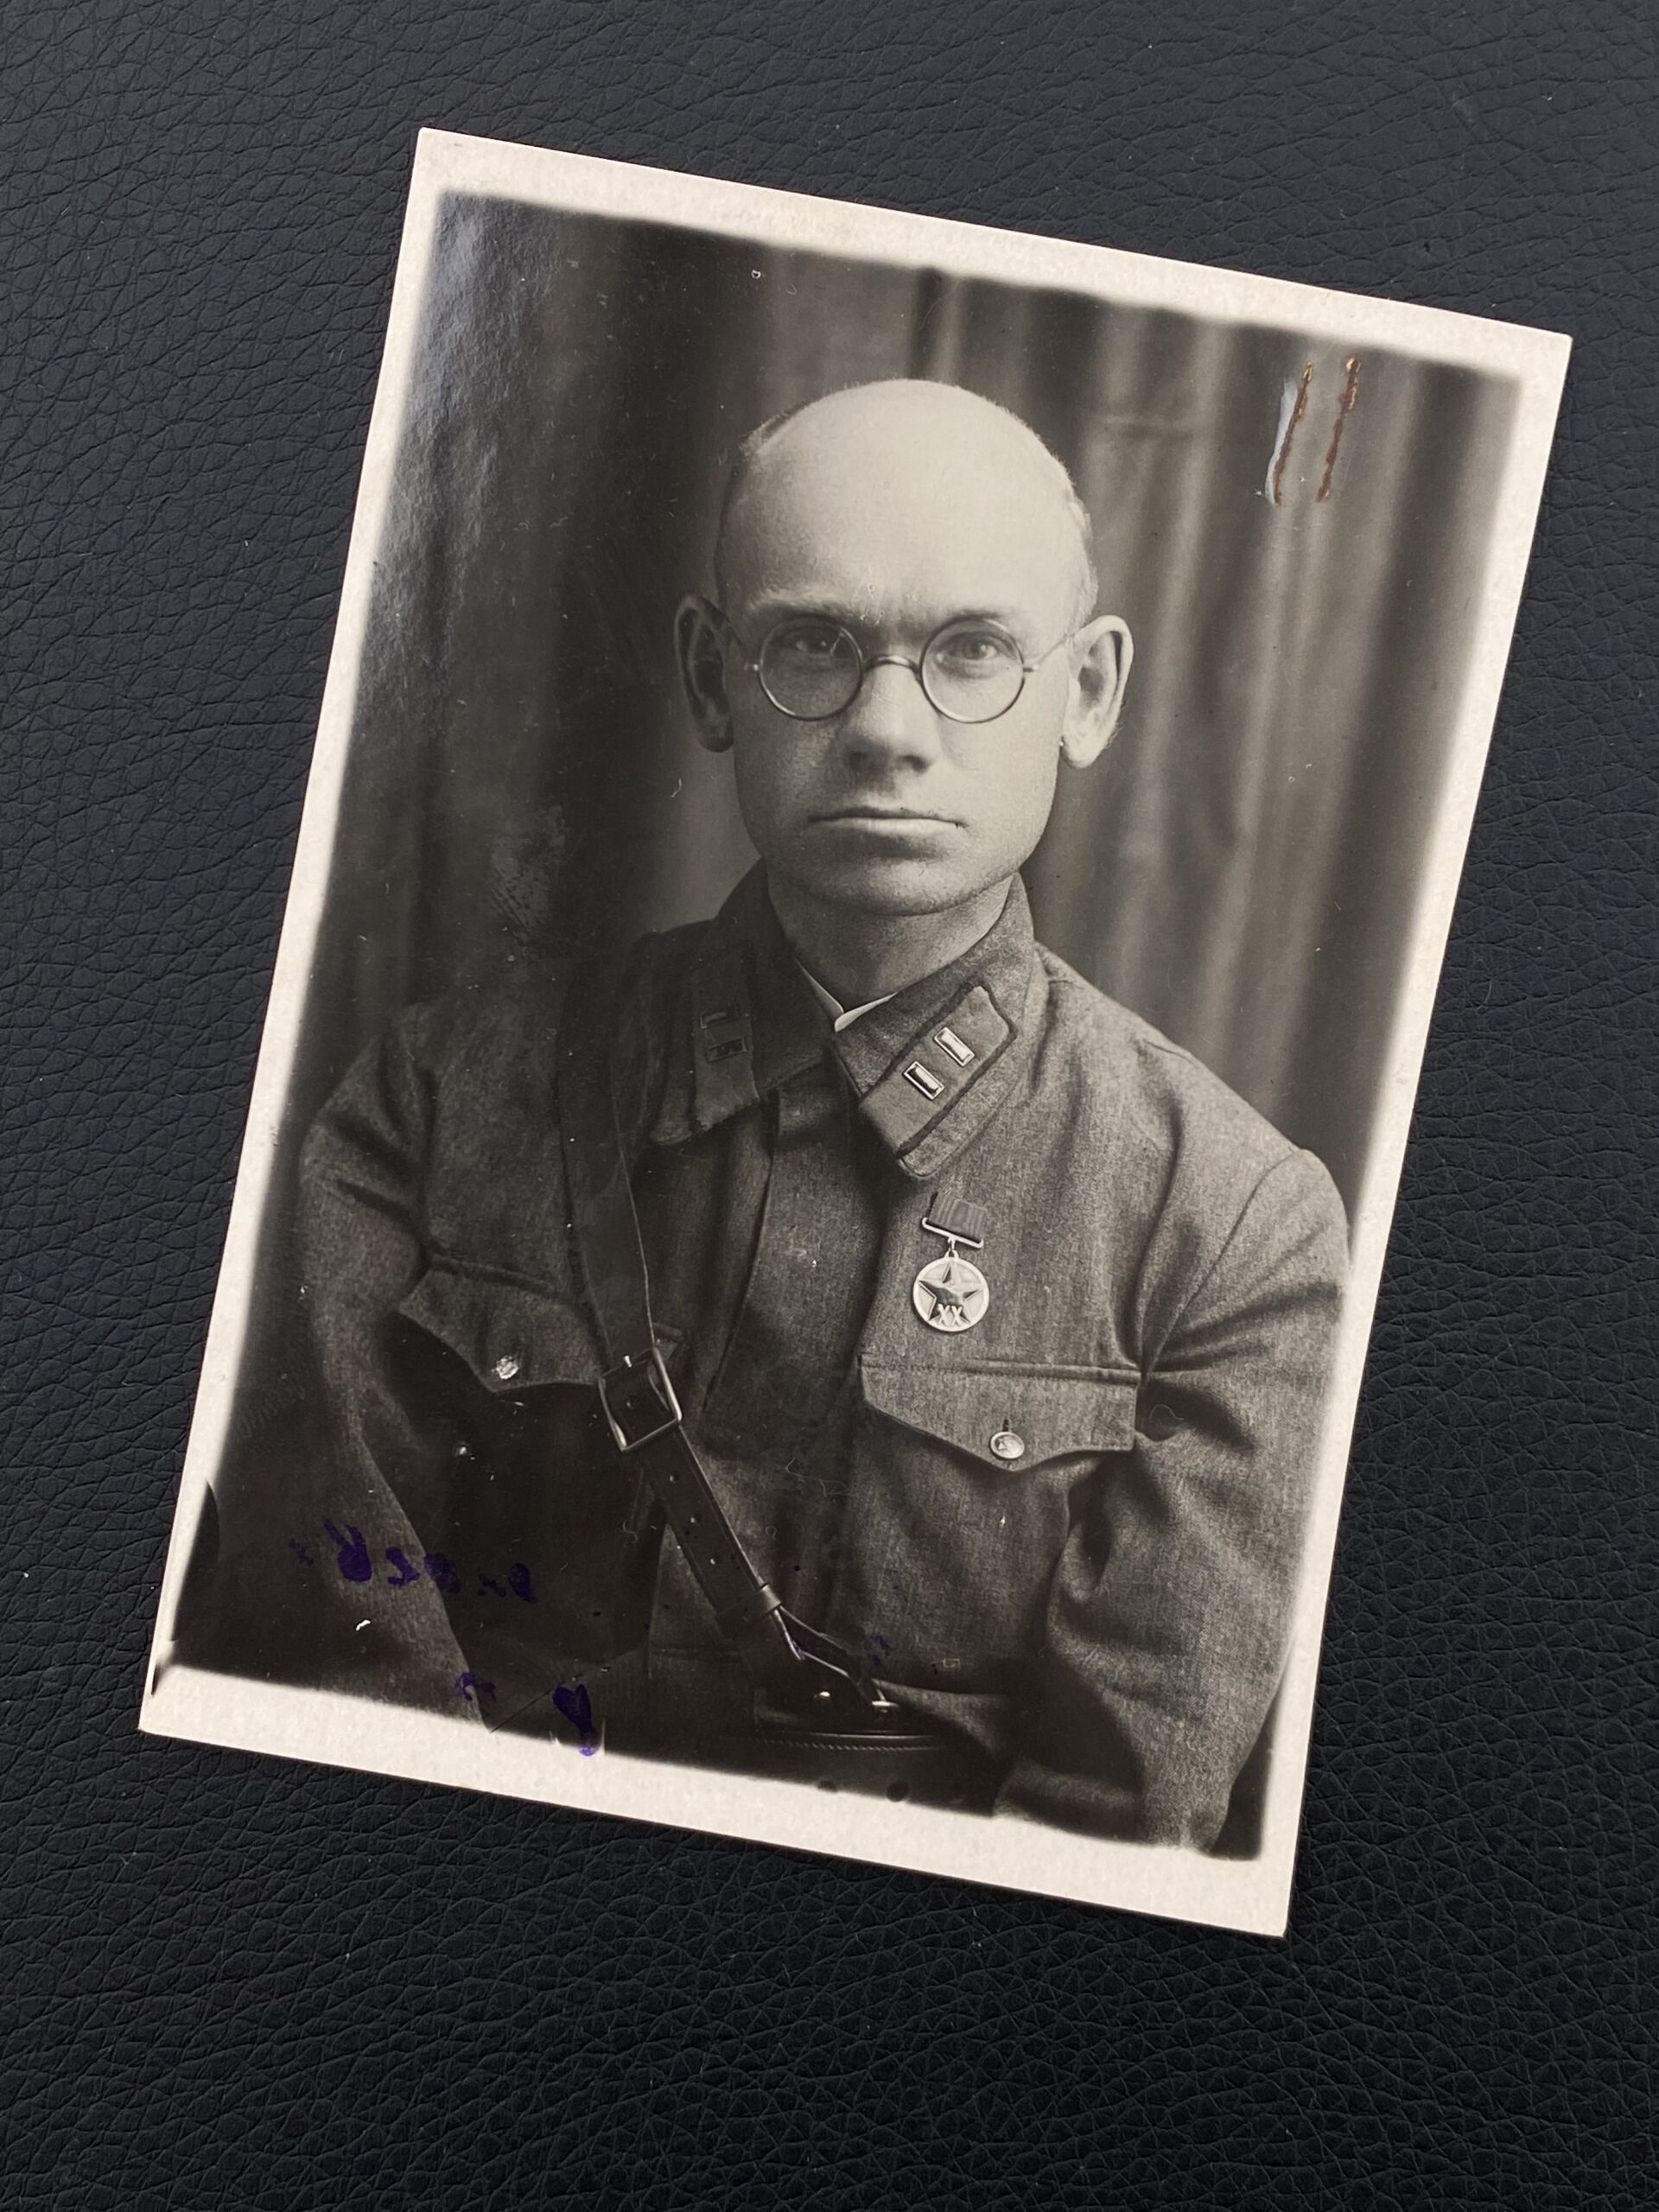 Батальонный комиссар тов. Трухин с медалью 20 лет РККА, 1940 год.